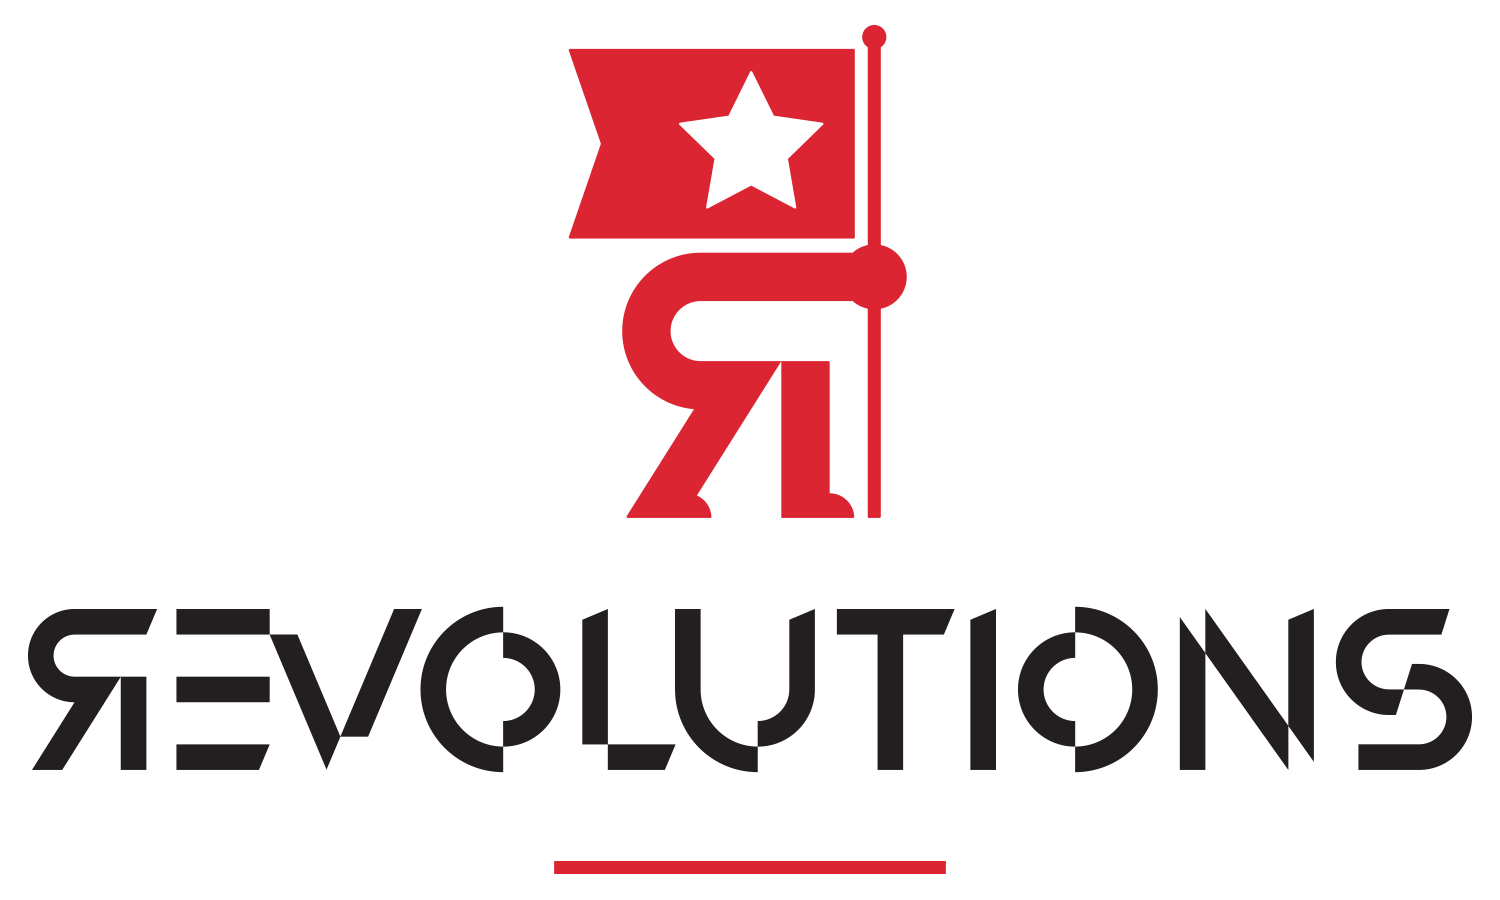 TEDxSalem Revolutions logo revealed